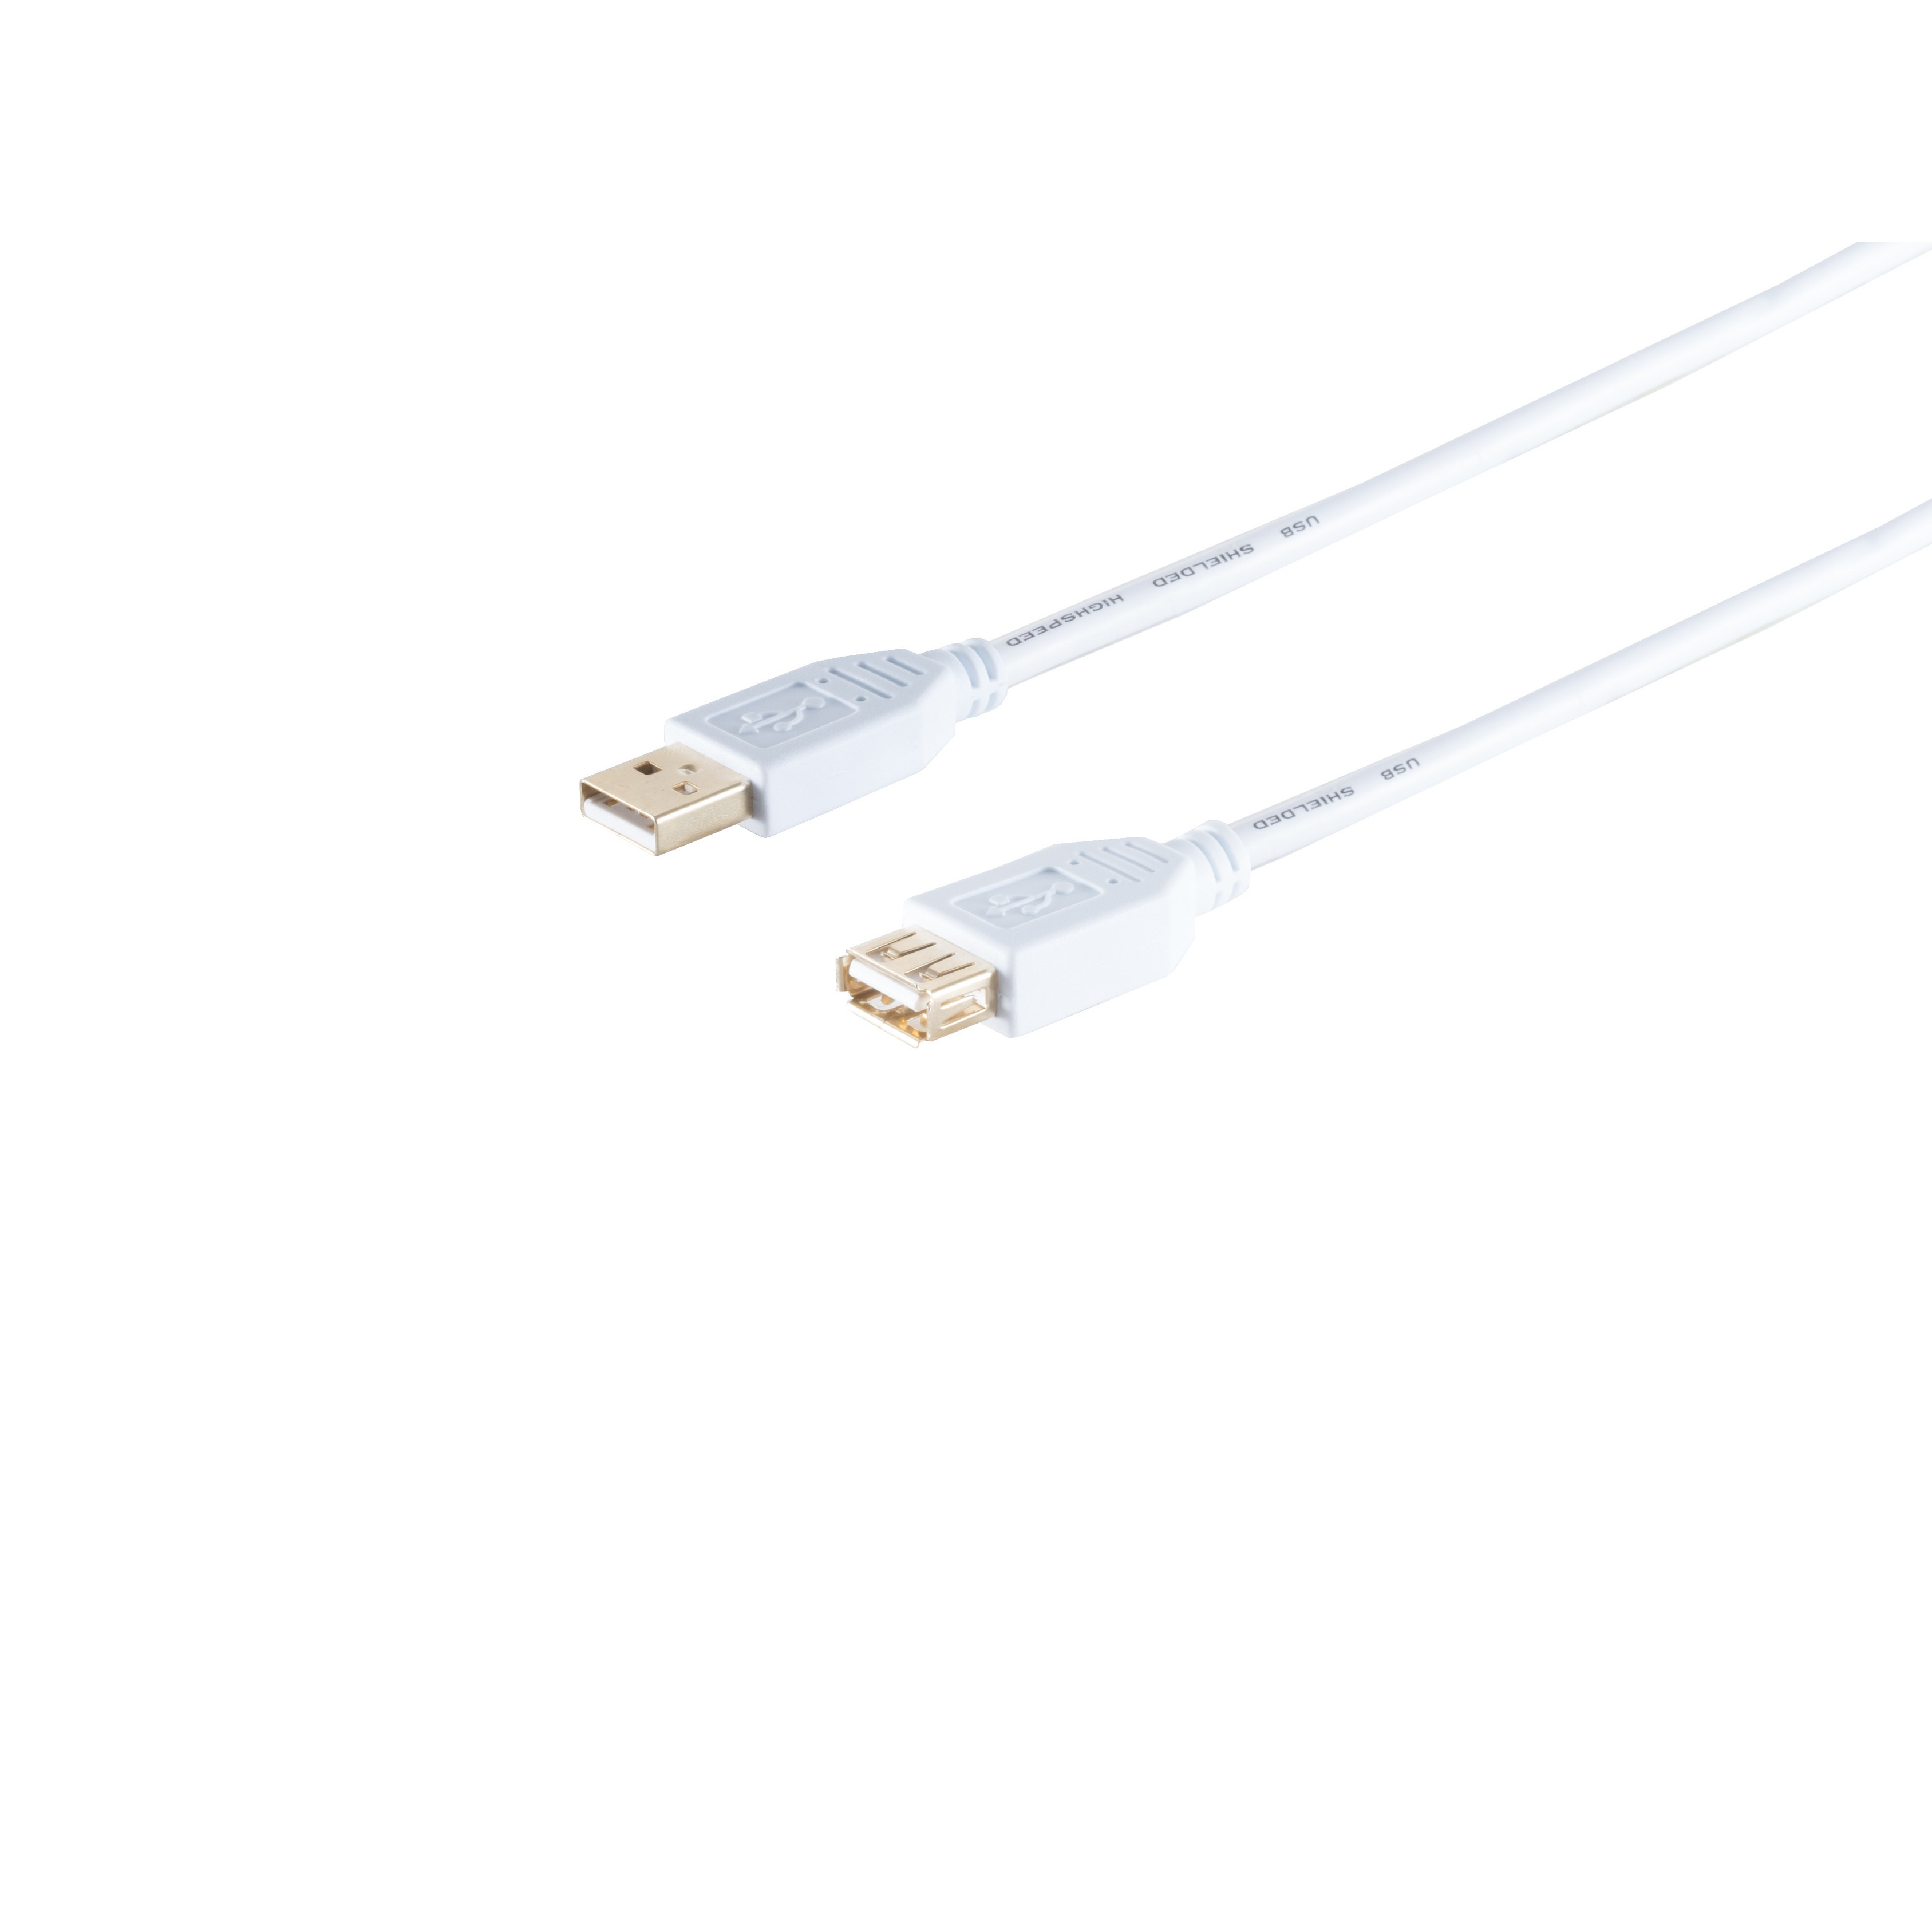 S/CONN Speed USB Verlängerung, CONNECTIVITY MAXIMUM USB weiß, USB 2.0 High Buchse, Kabel A/A 5m 2.0,